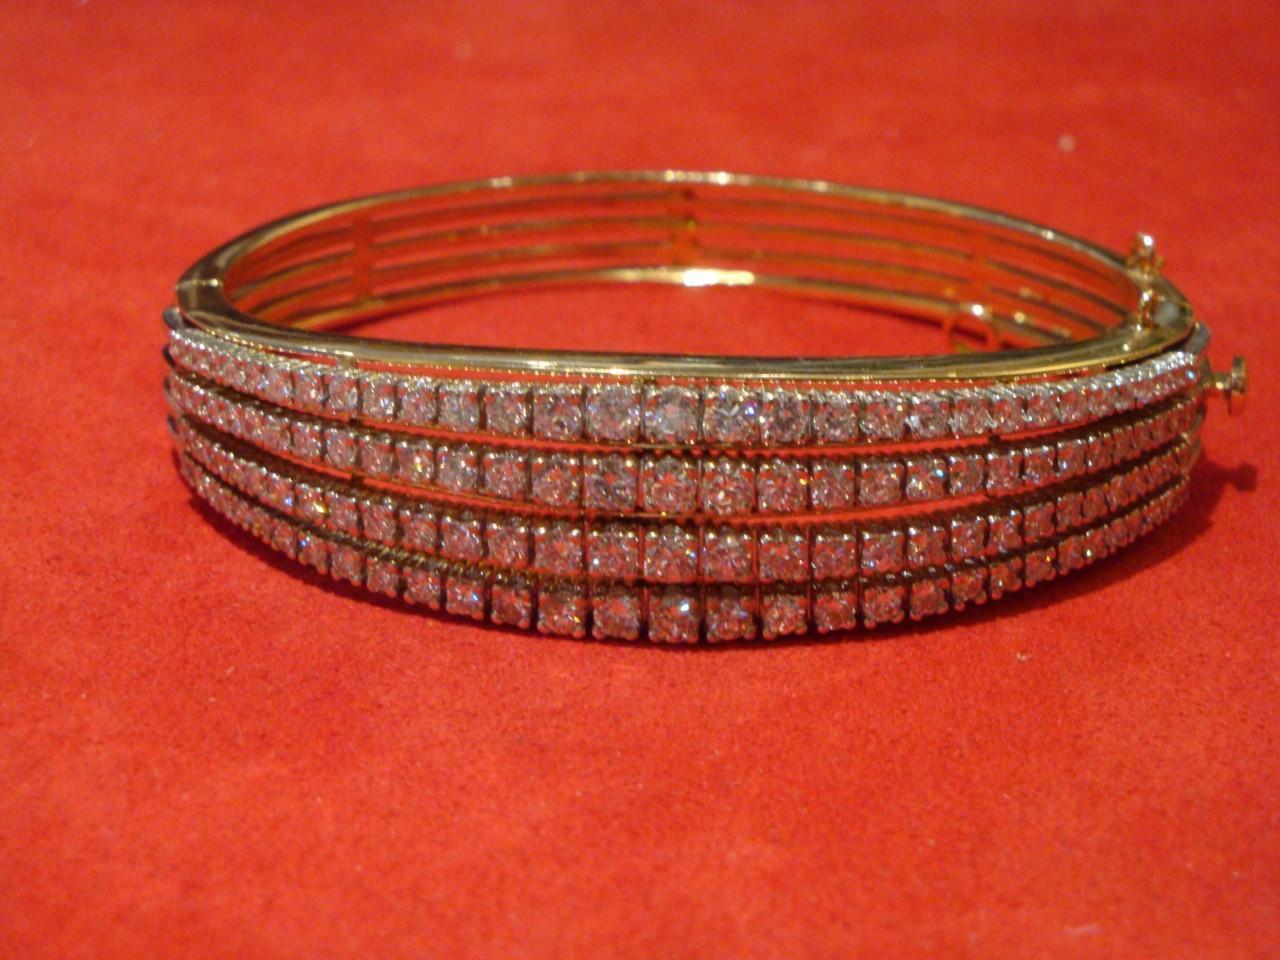 Der folgende Artikel, den wir anbieten, ist dieses seltene Armband aus 14 Kt. Gelbgold und Diamanten, in einem abgestuften vierreihigen Design mit 124 runden Diamanten im Brillantschliff mit einem Gesamtgewicht von ca. 5,00 Karat, mit Scharnieren.